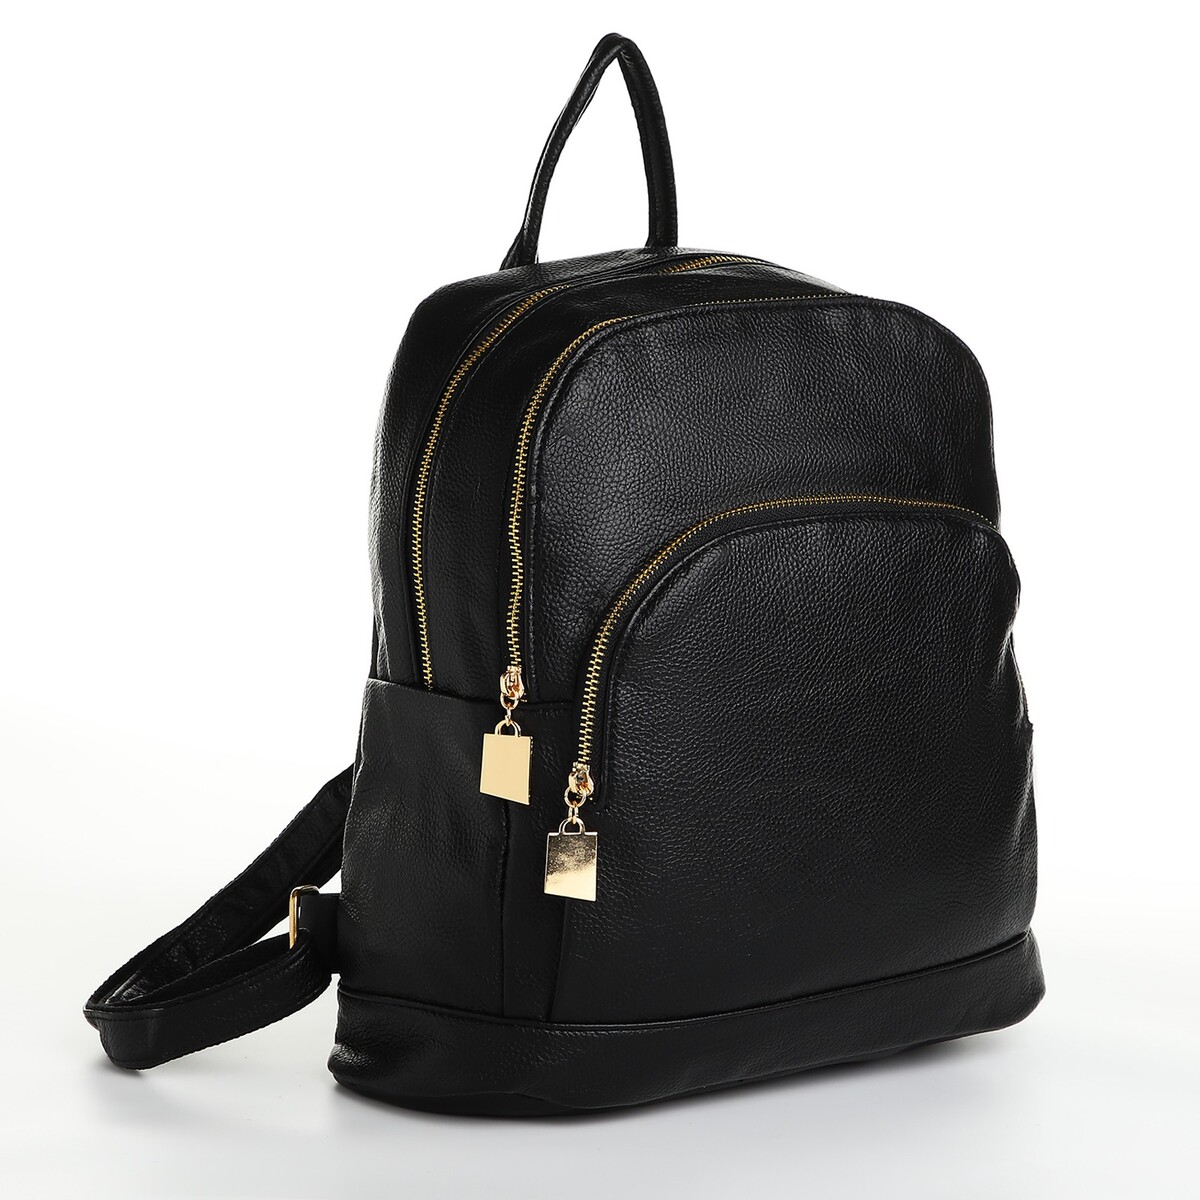 Рюкзак городской из искусственной кожи на молнии, 4 кармана, цвет черный